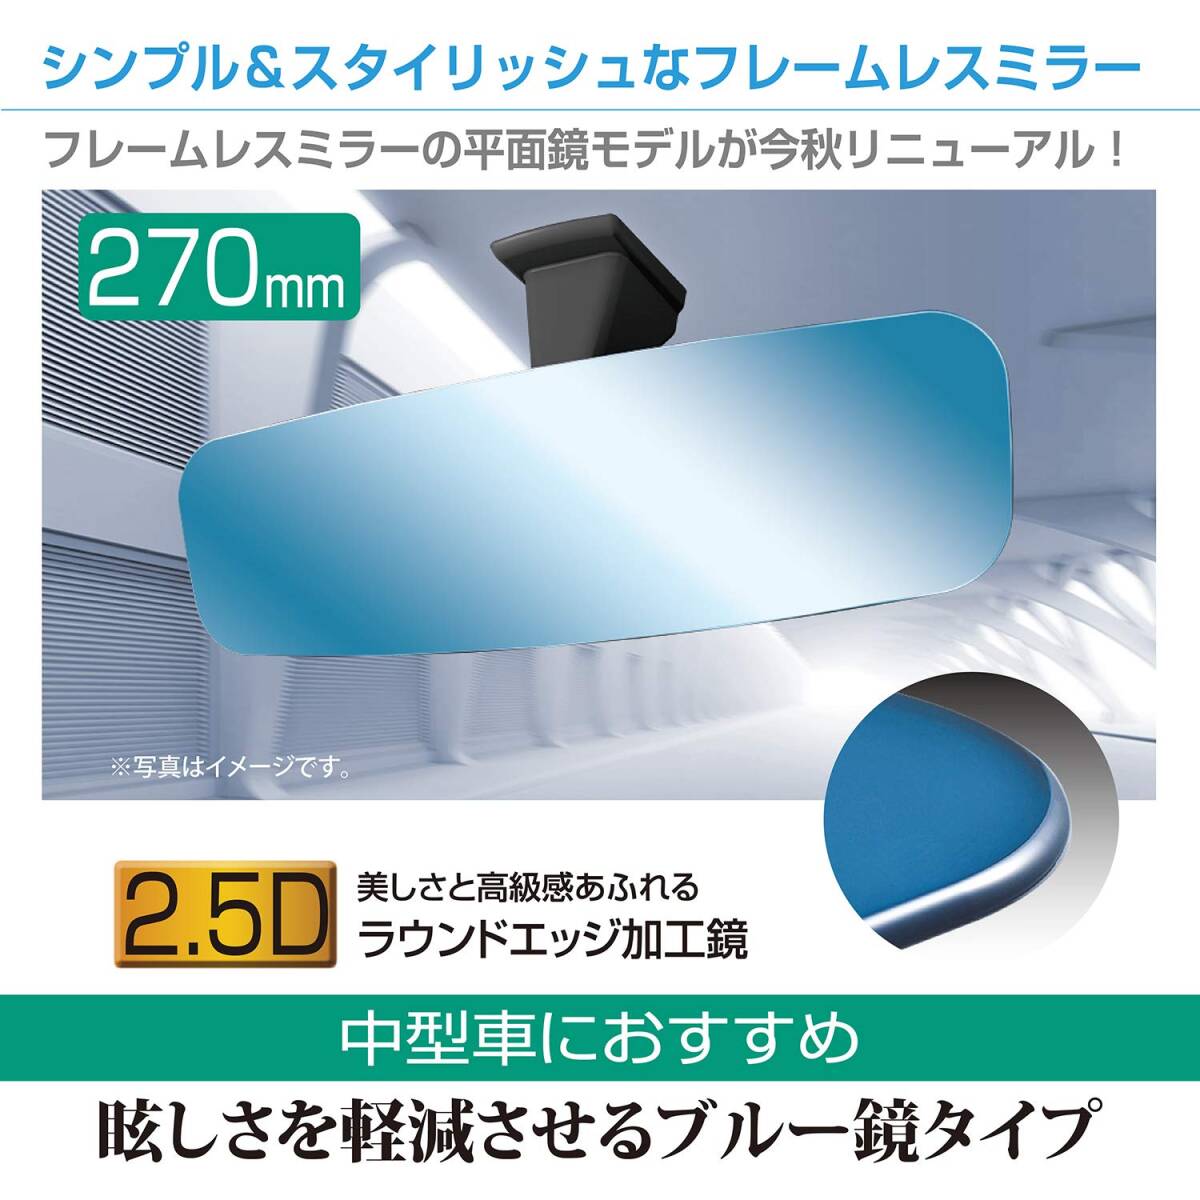 セイワ(SEIWA) 車内用品 ルームミラー フレームレスタイプ ブルー 270mm 平面鏡 R111_画像2